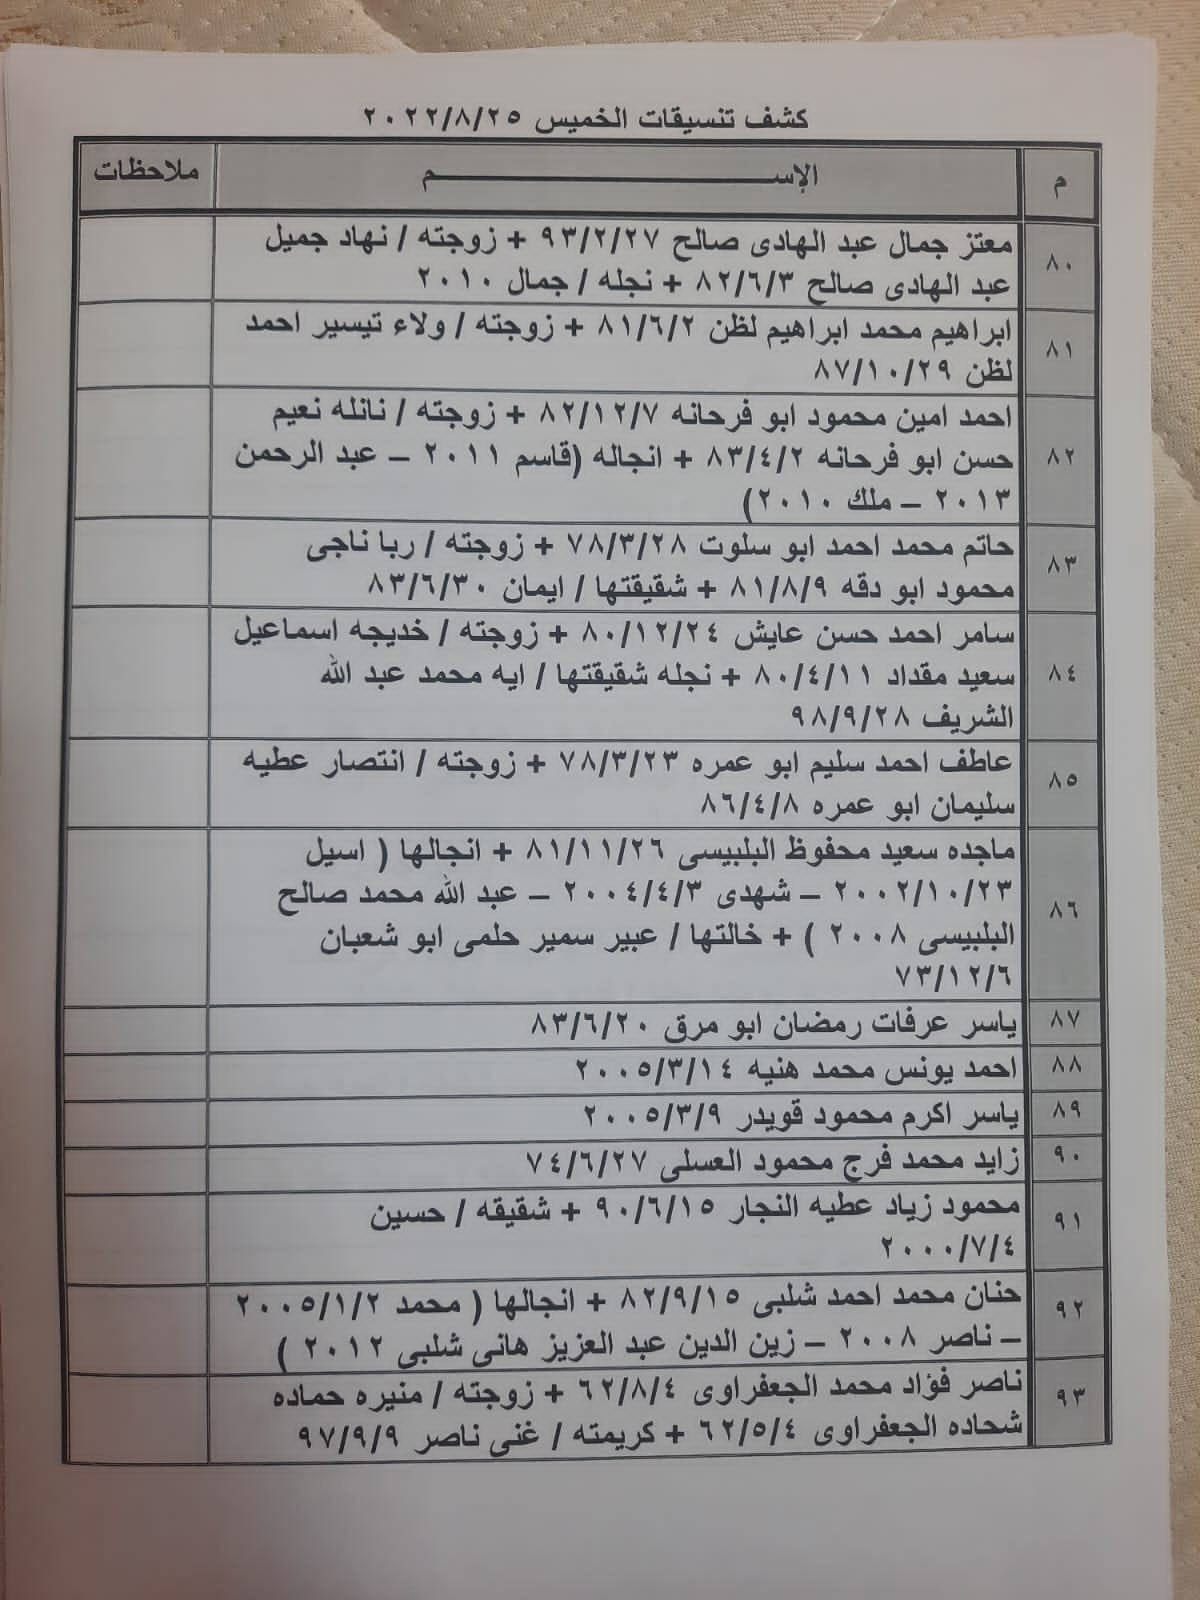 بالأسماء: كشف "تنسيقات مصرية" للسفر عبر معبر رفح الخميس 25 أغسطس 2022